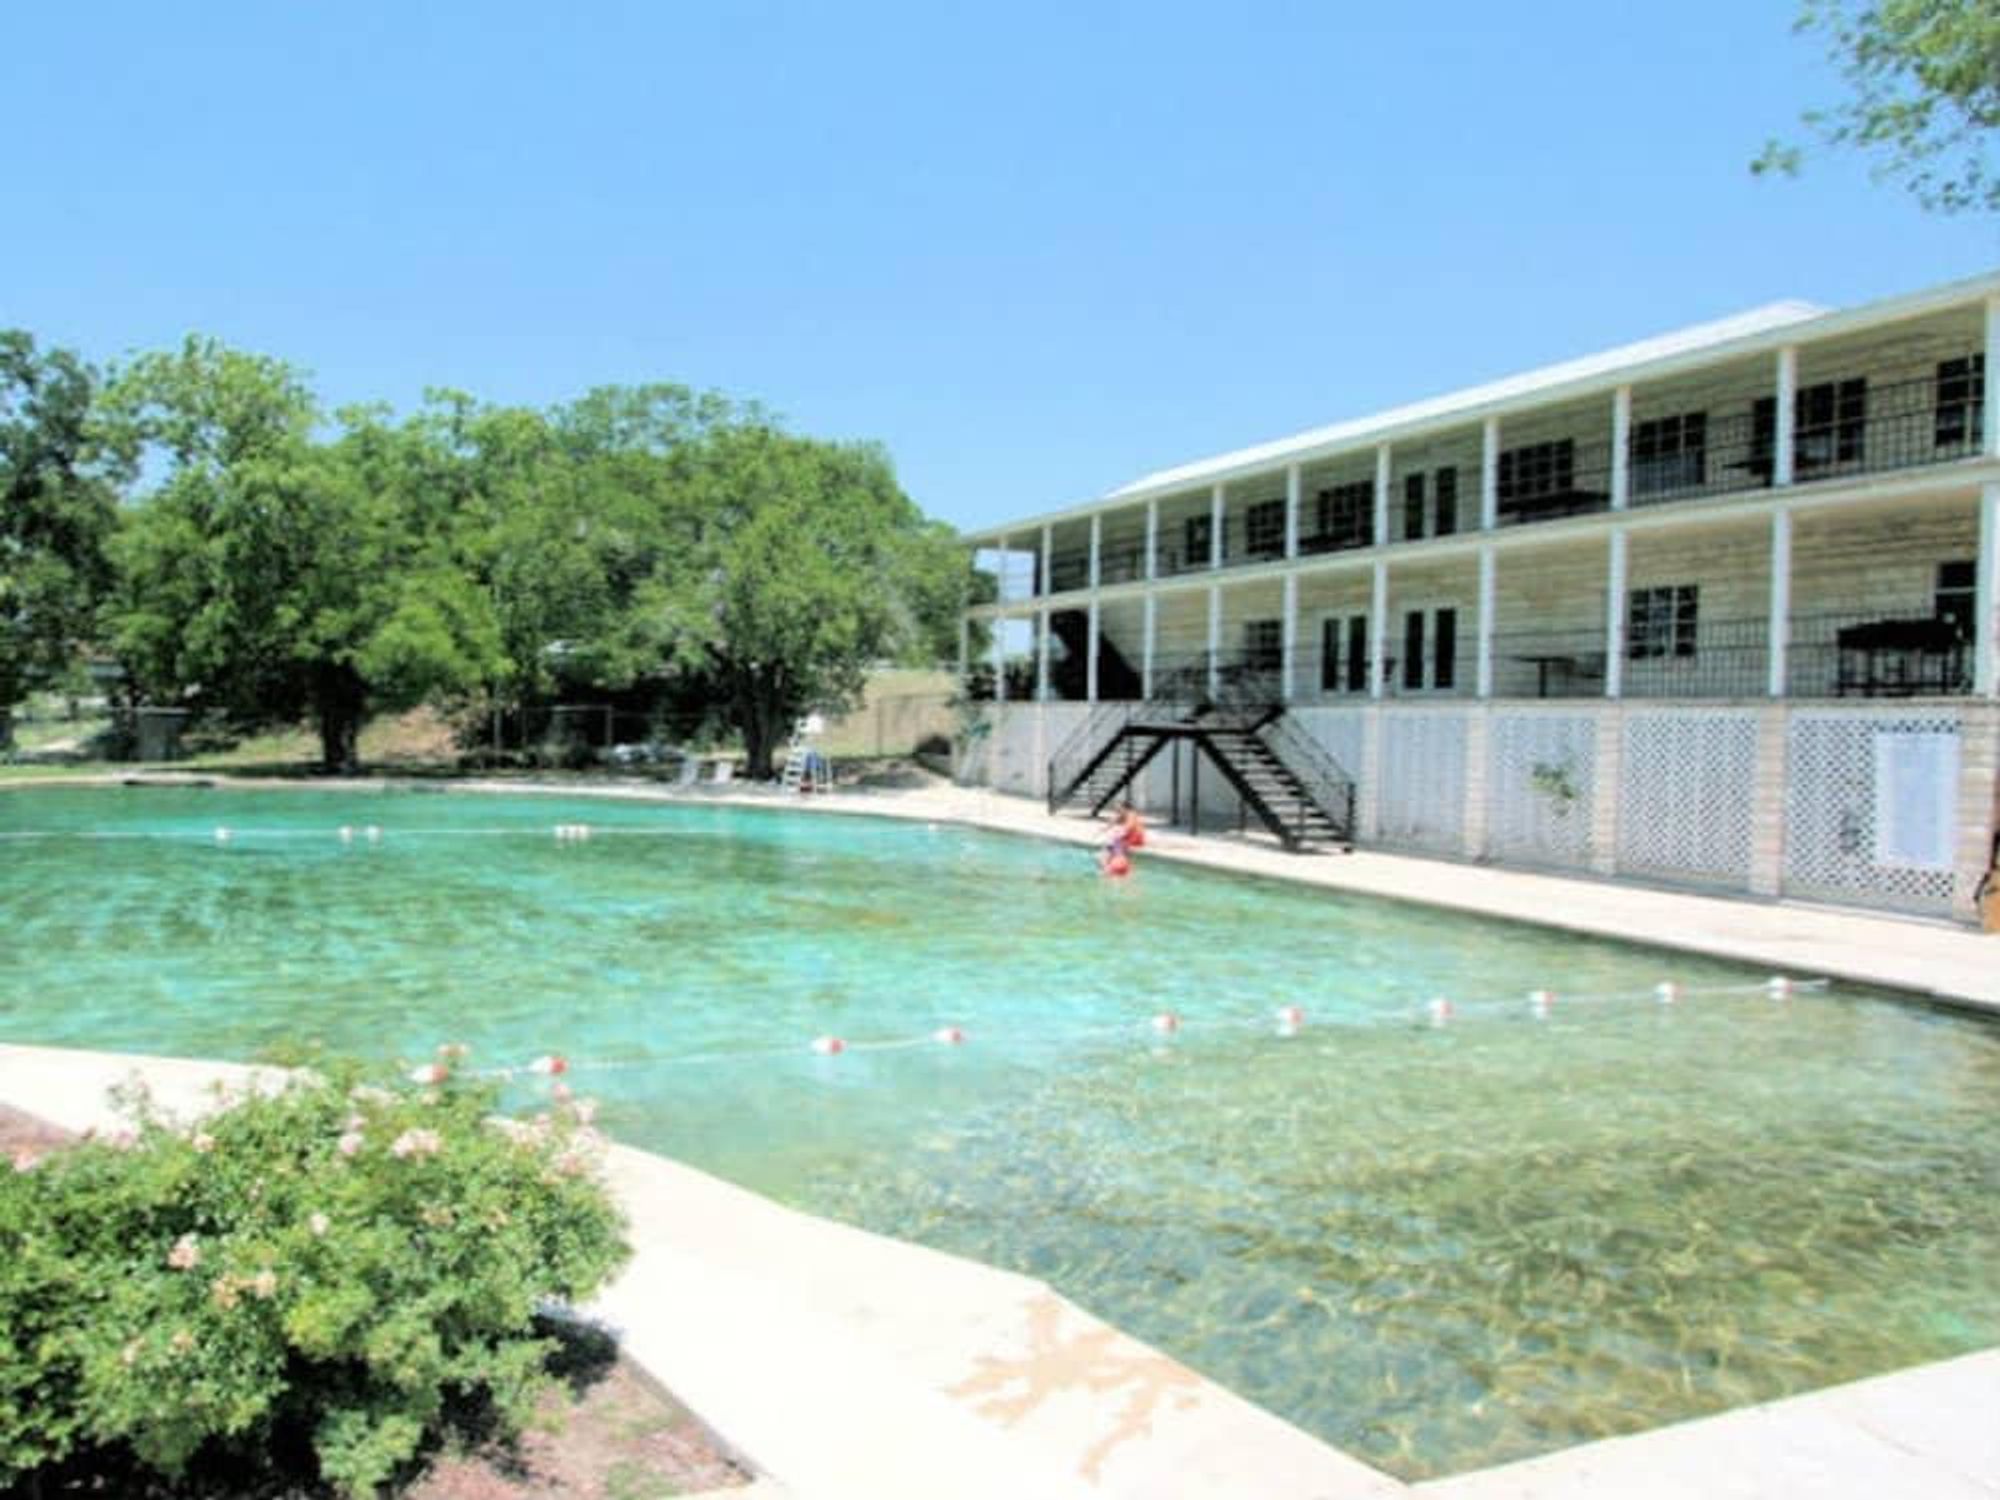 Hancock Springs pool